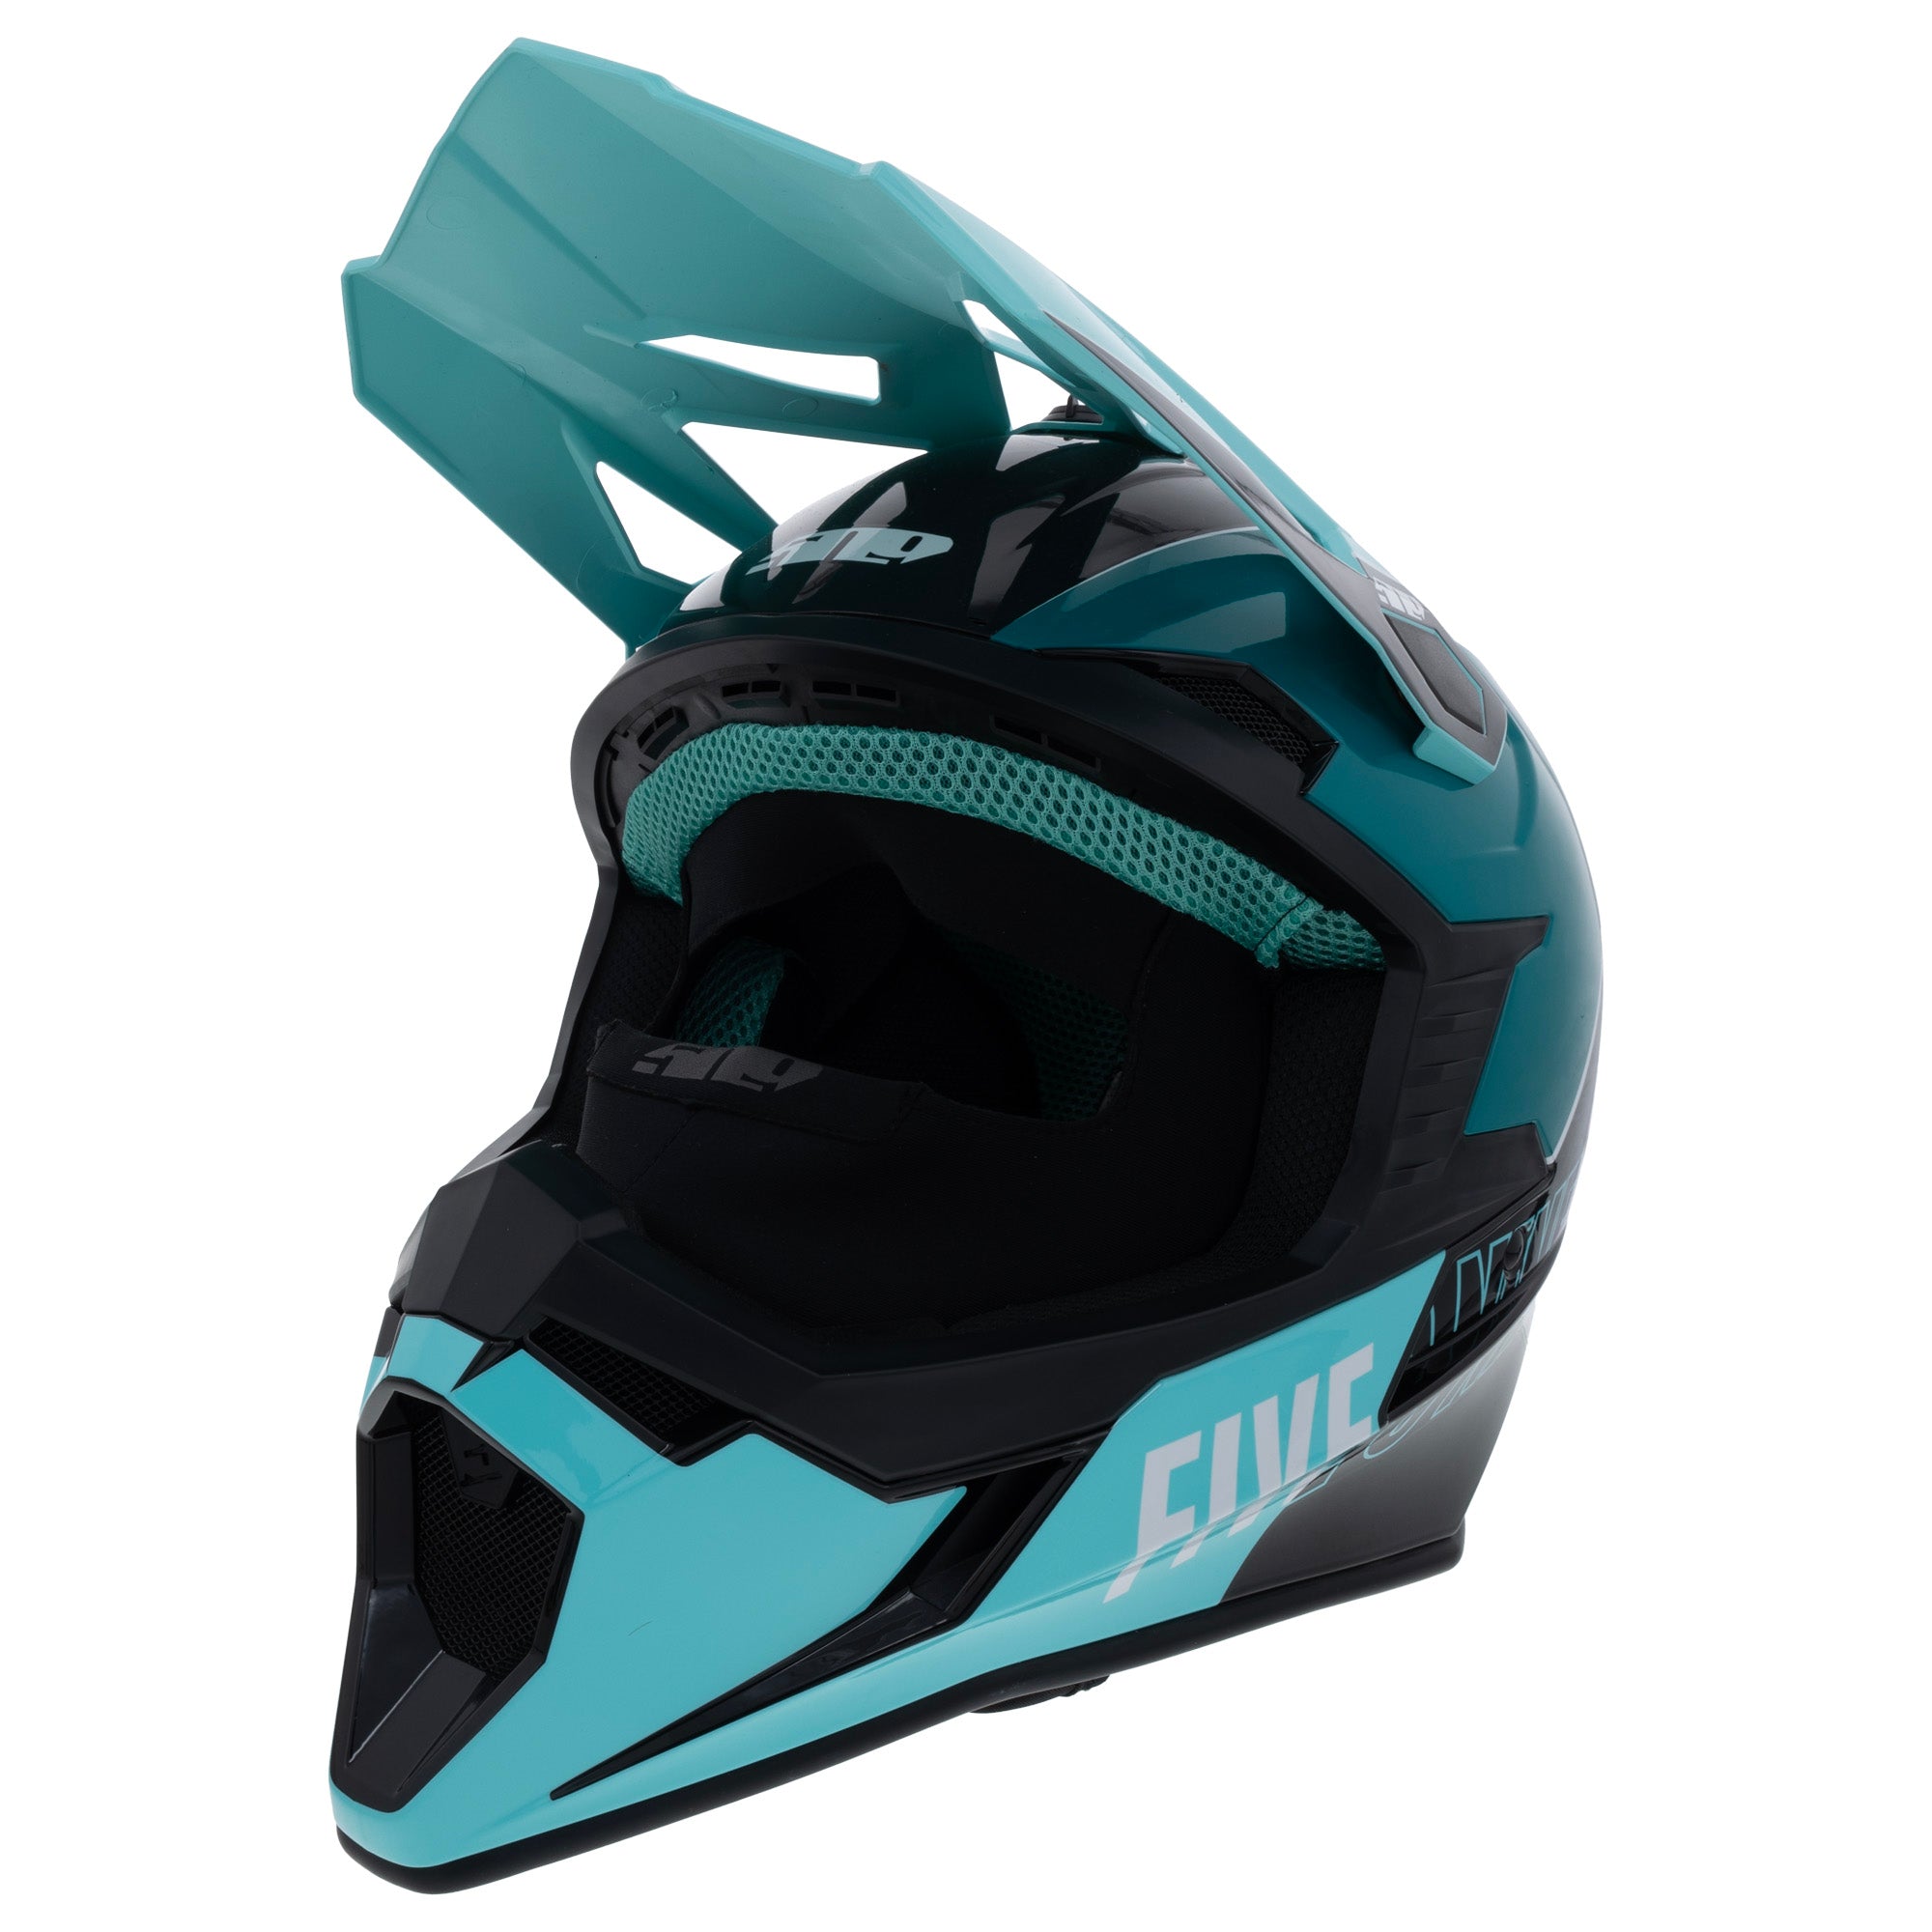 Genuine OEM 509 Tactical 2.0 Helmet with Fidlock